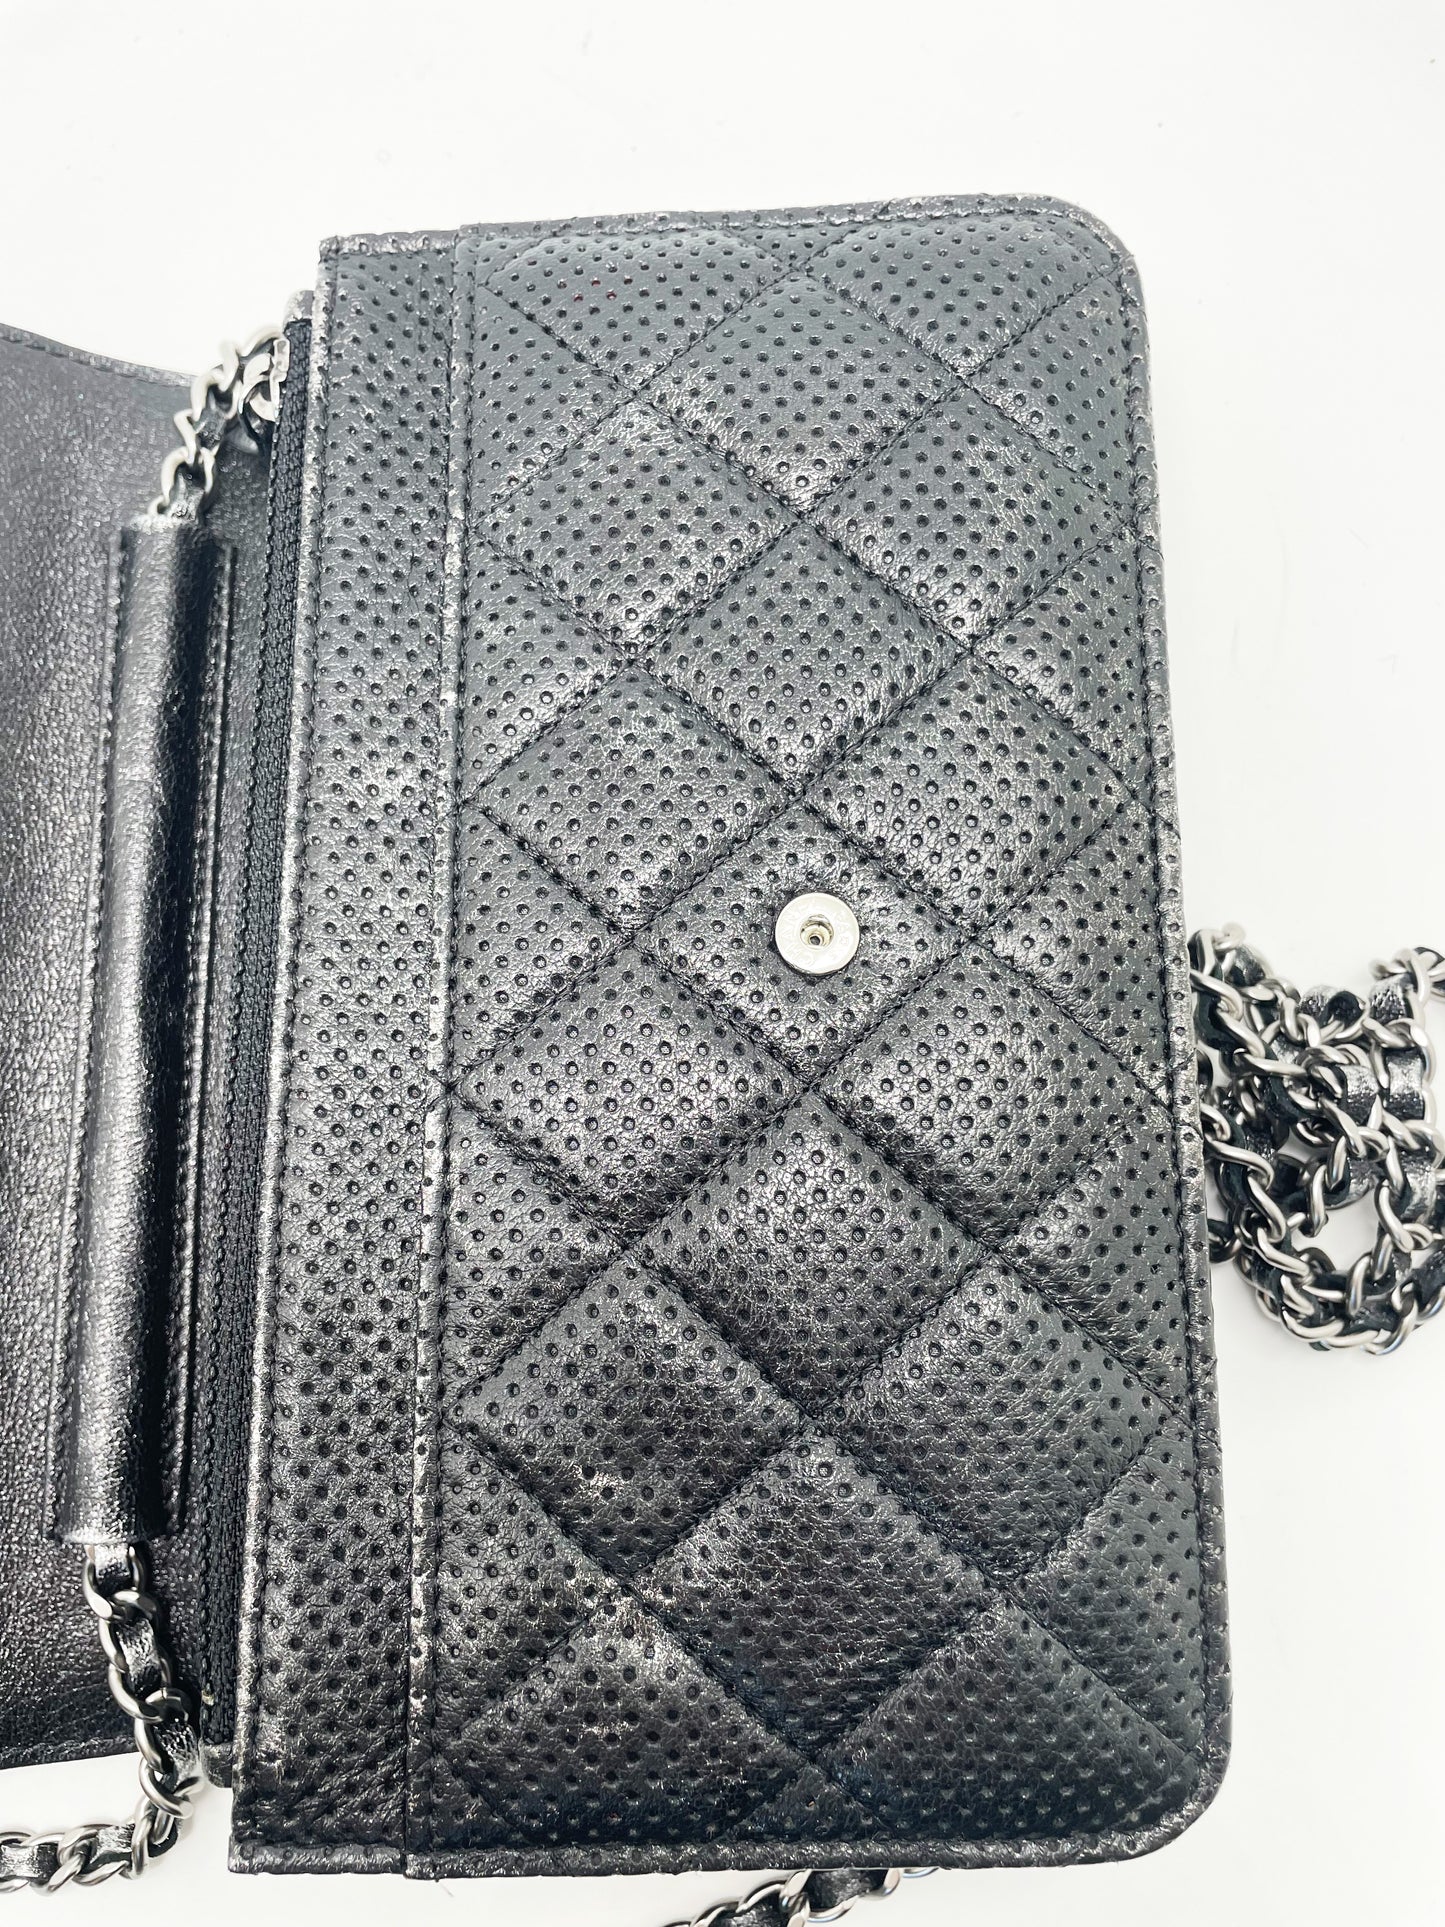 Sac Chanel bandoulière wallet on chain (woc) en cuir perforé noir et argenté